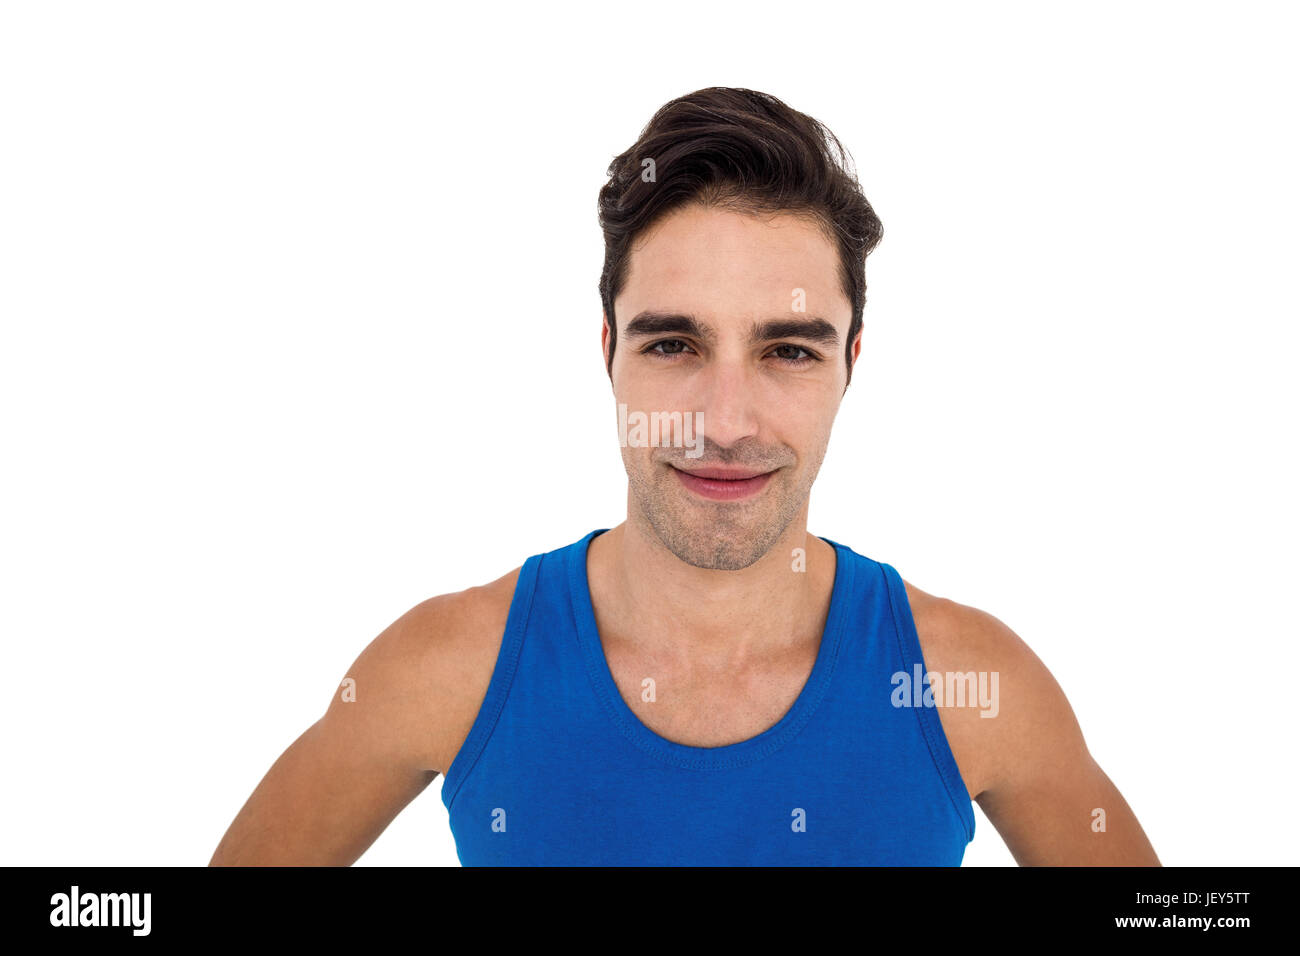 Männlicher Athlet posiert auf weißem Hintergrund Stockfoto